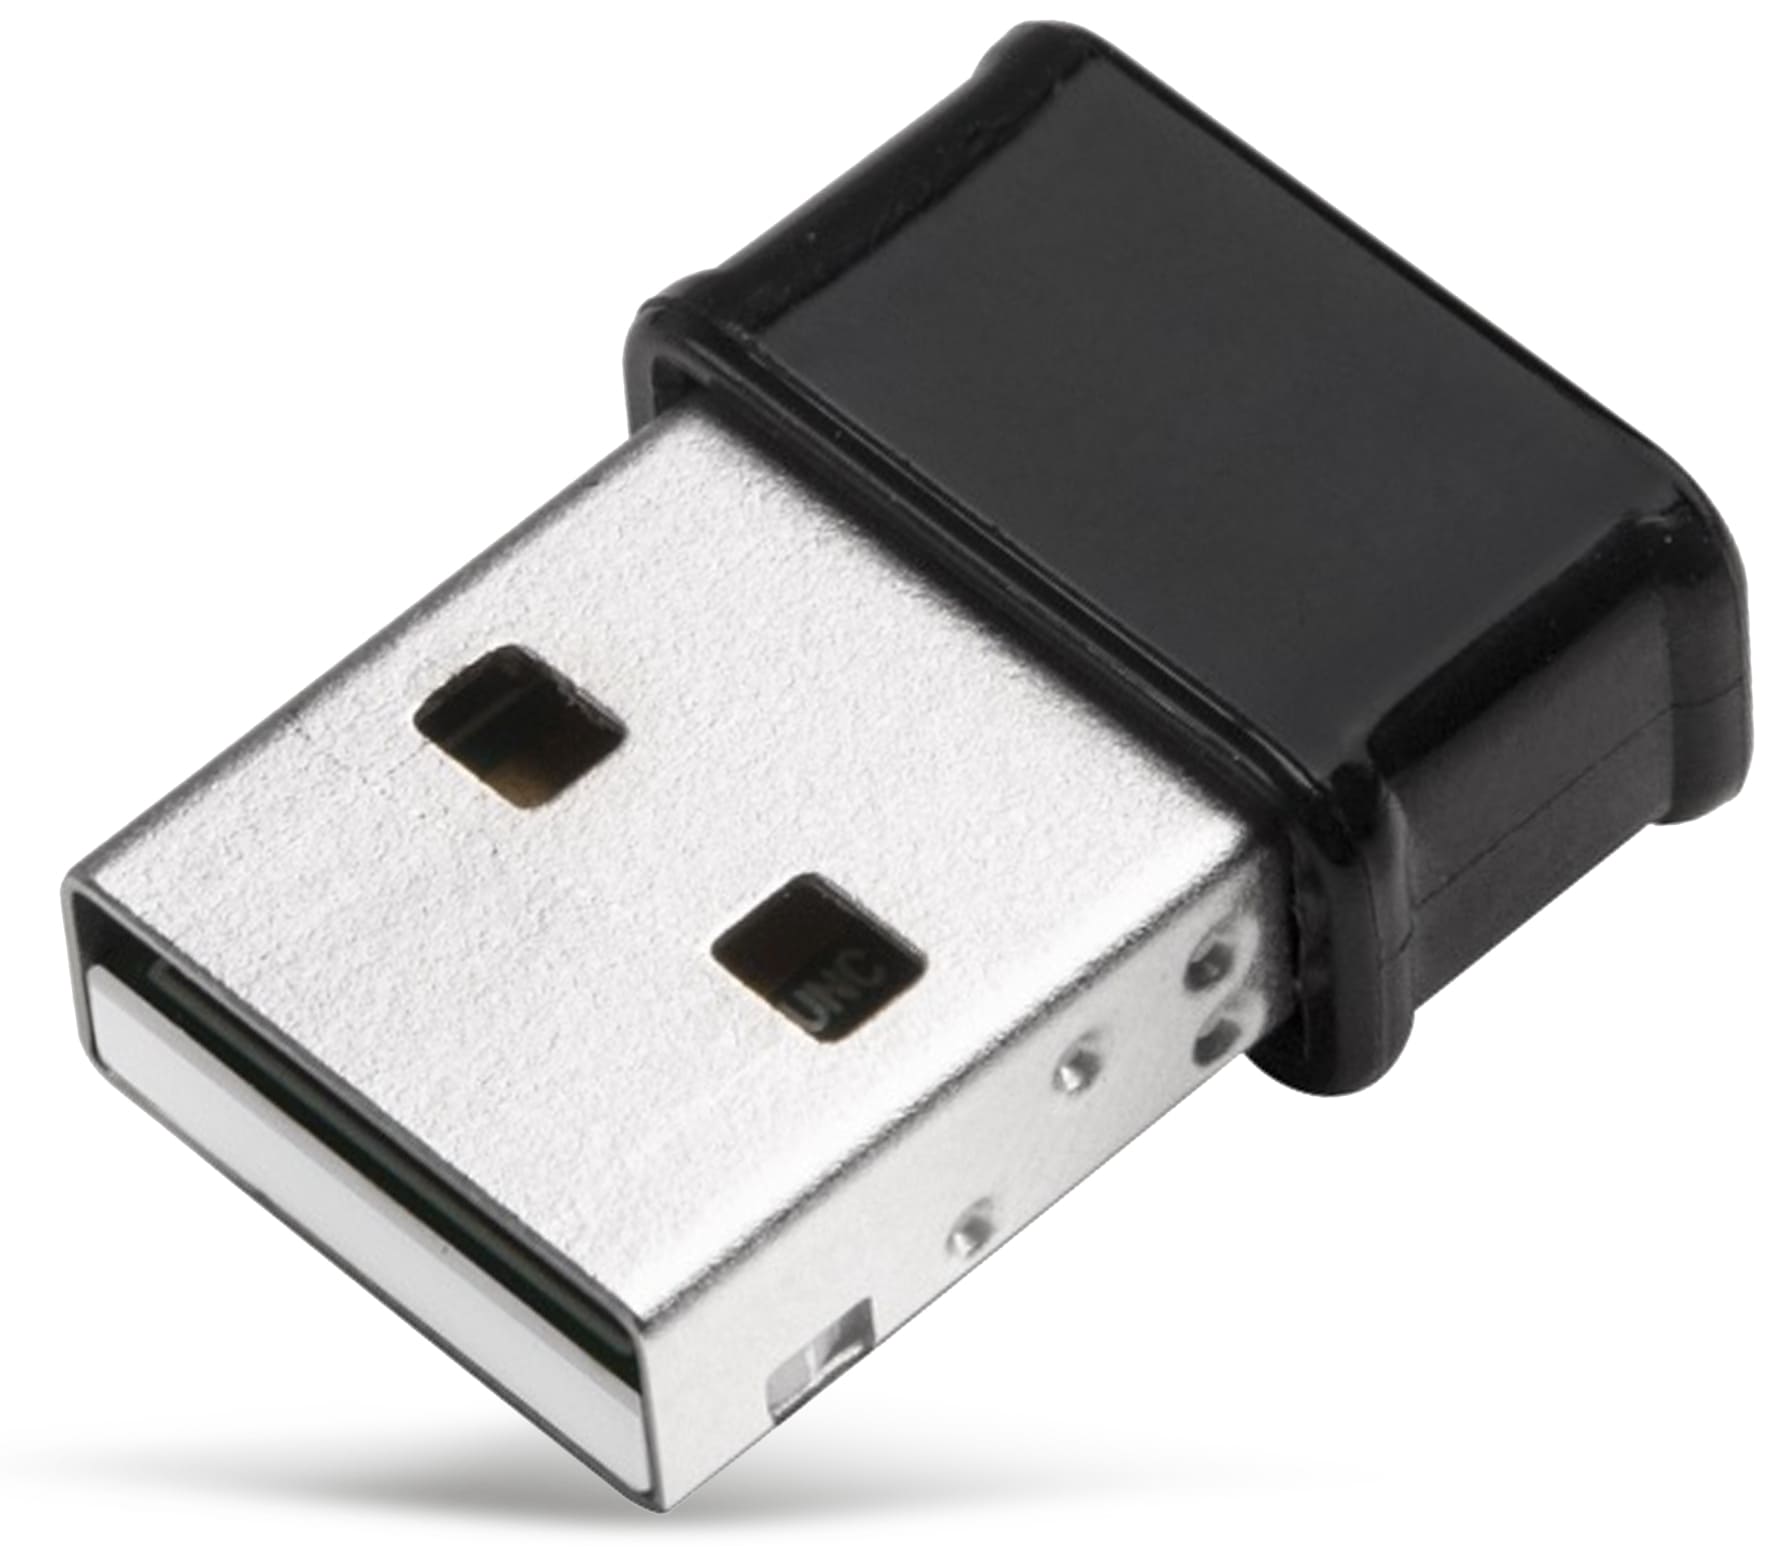 EDIMAX WLAN USB-Stick EW-7822ULC, AC1200, 2,4/5 GHz, MU-MIMO